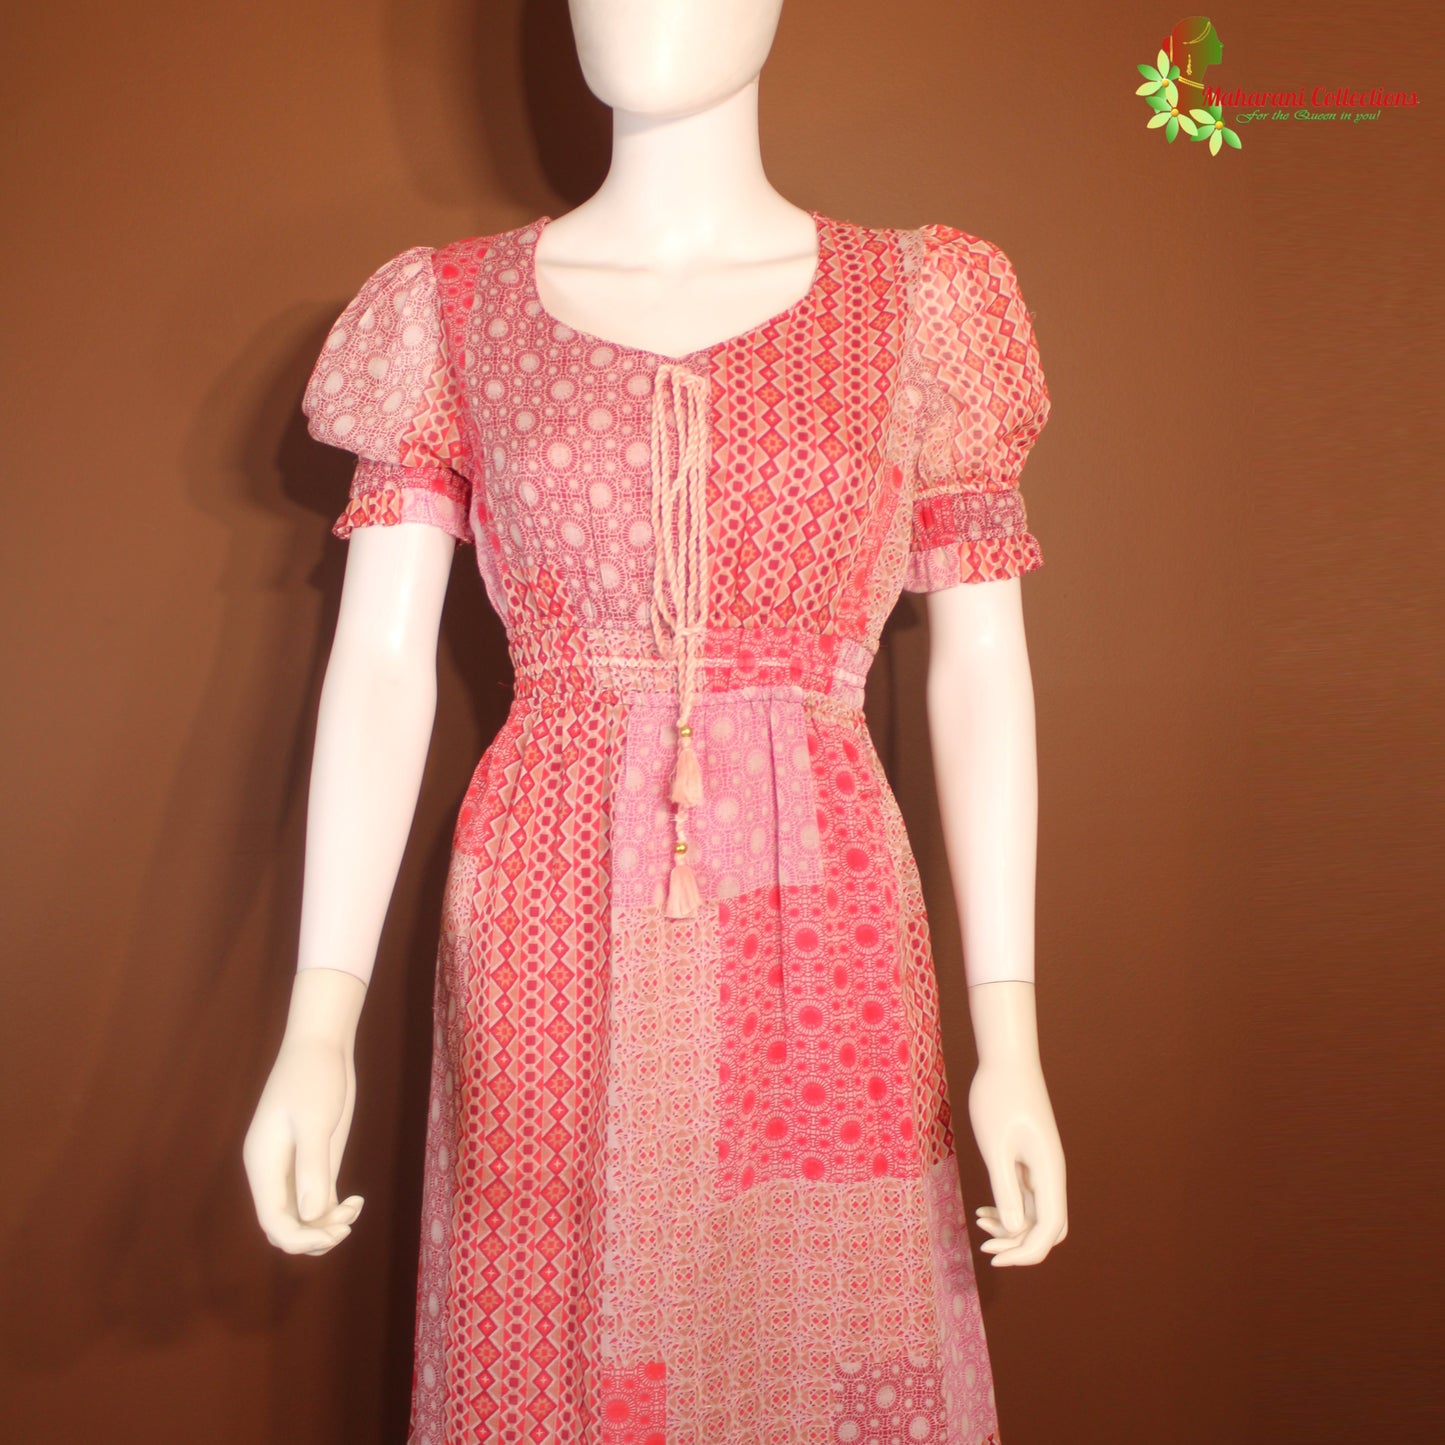 Maharani's Long Dress - Soft cotton - Pink (M)